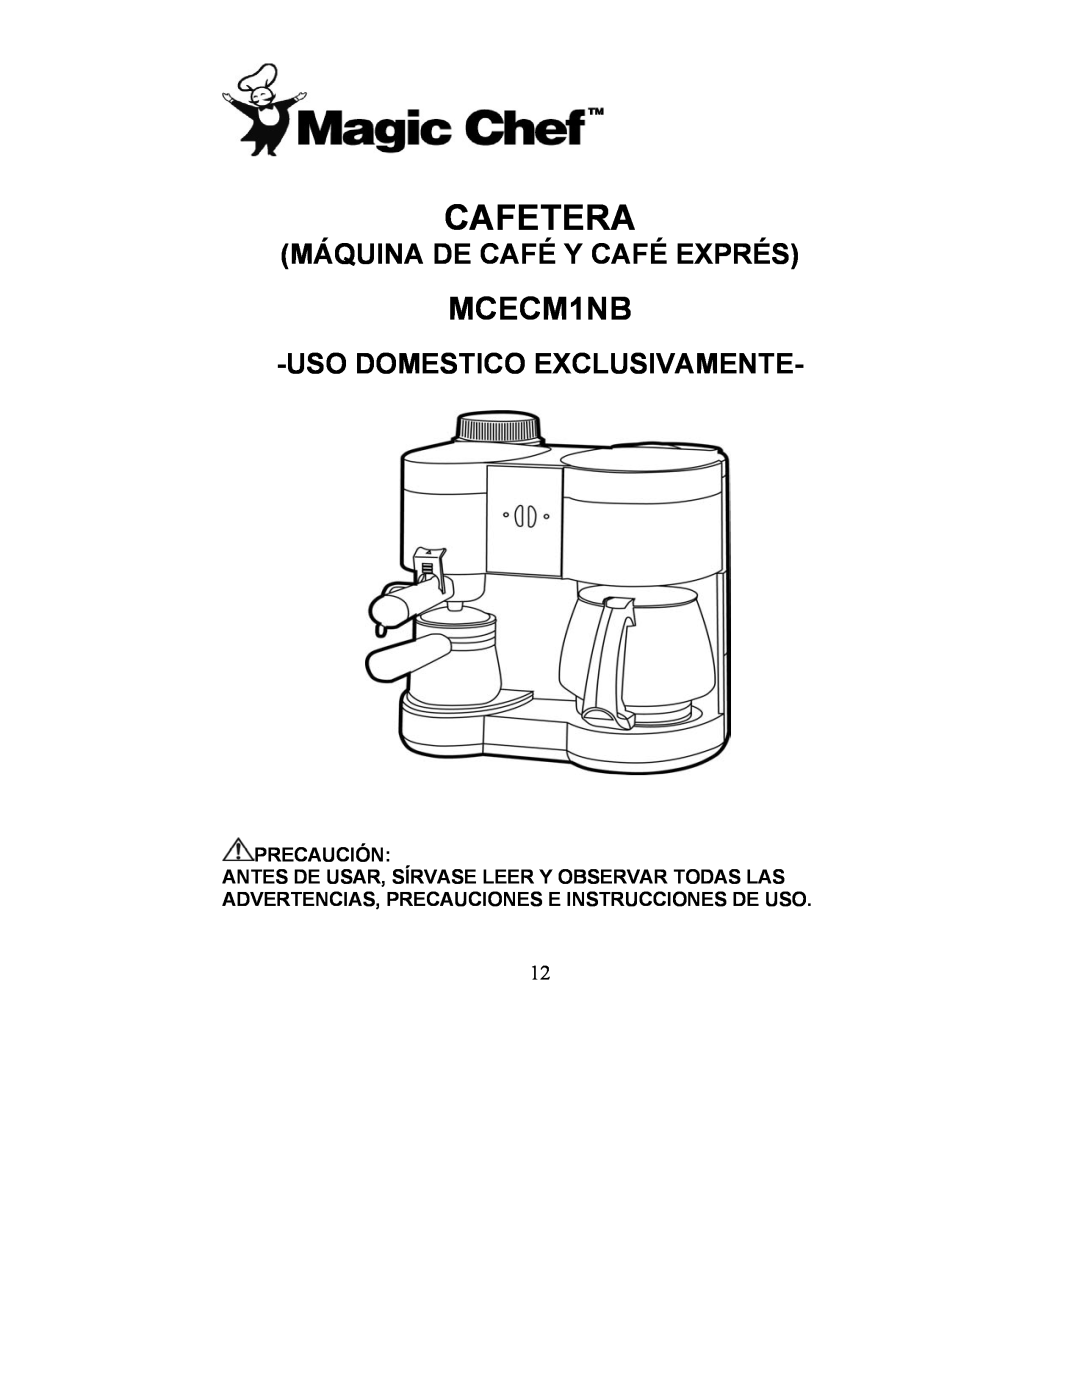 Magic Chef MCECM1NB manual Cafetera, Máquina De Café Y Café Exprés, Usodomestico Exclusivamente 